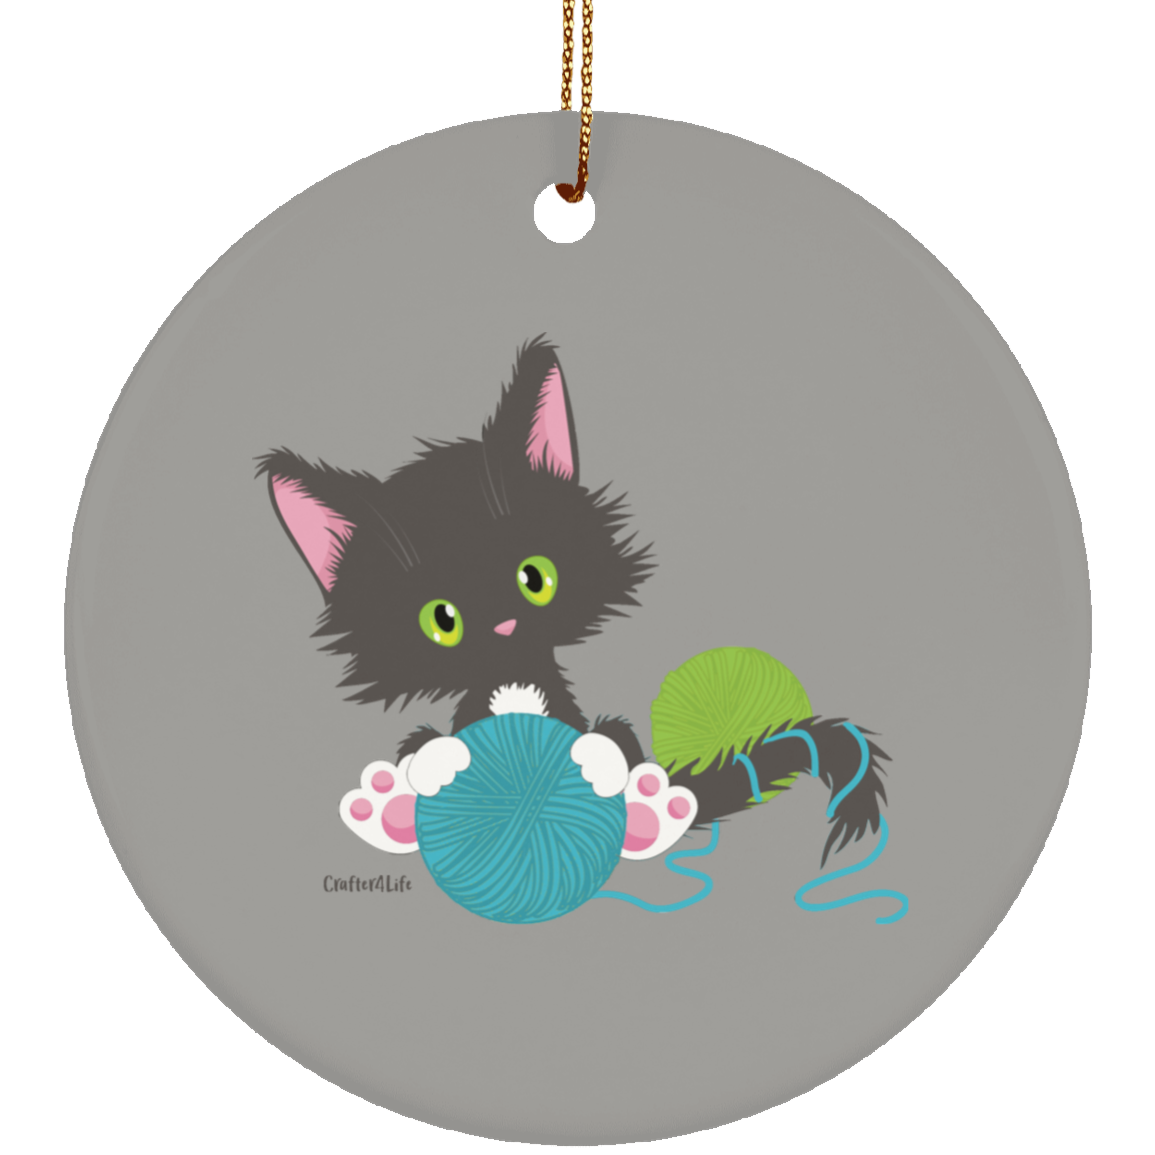 Grey Tuxedo Kitty Holding Ball of Yarn Ornaments